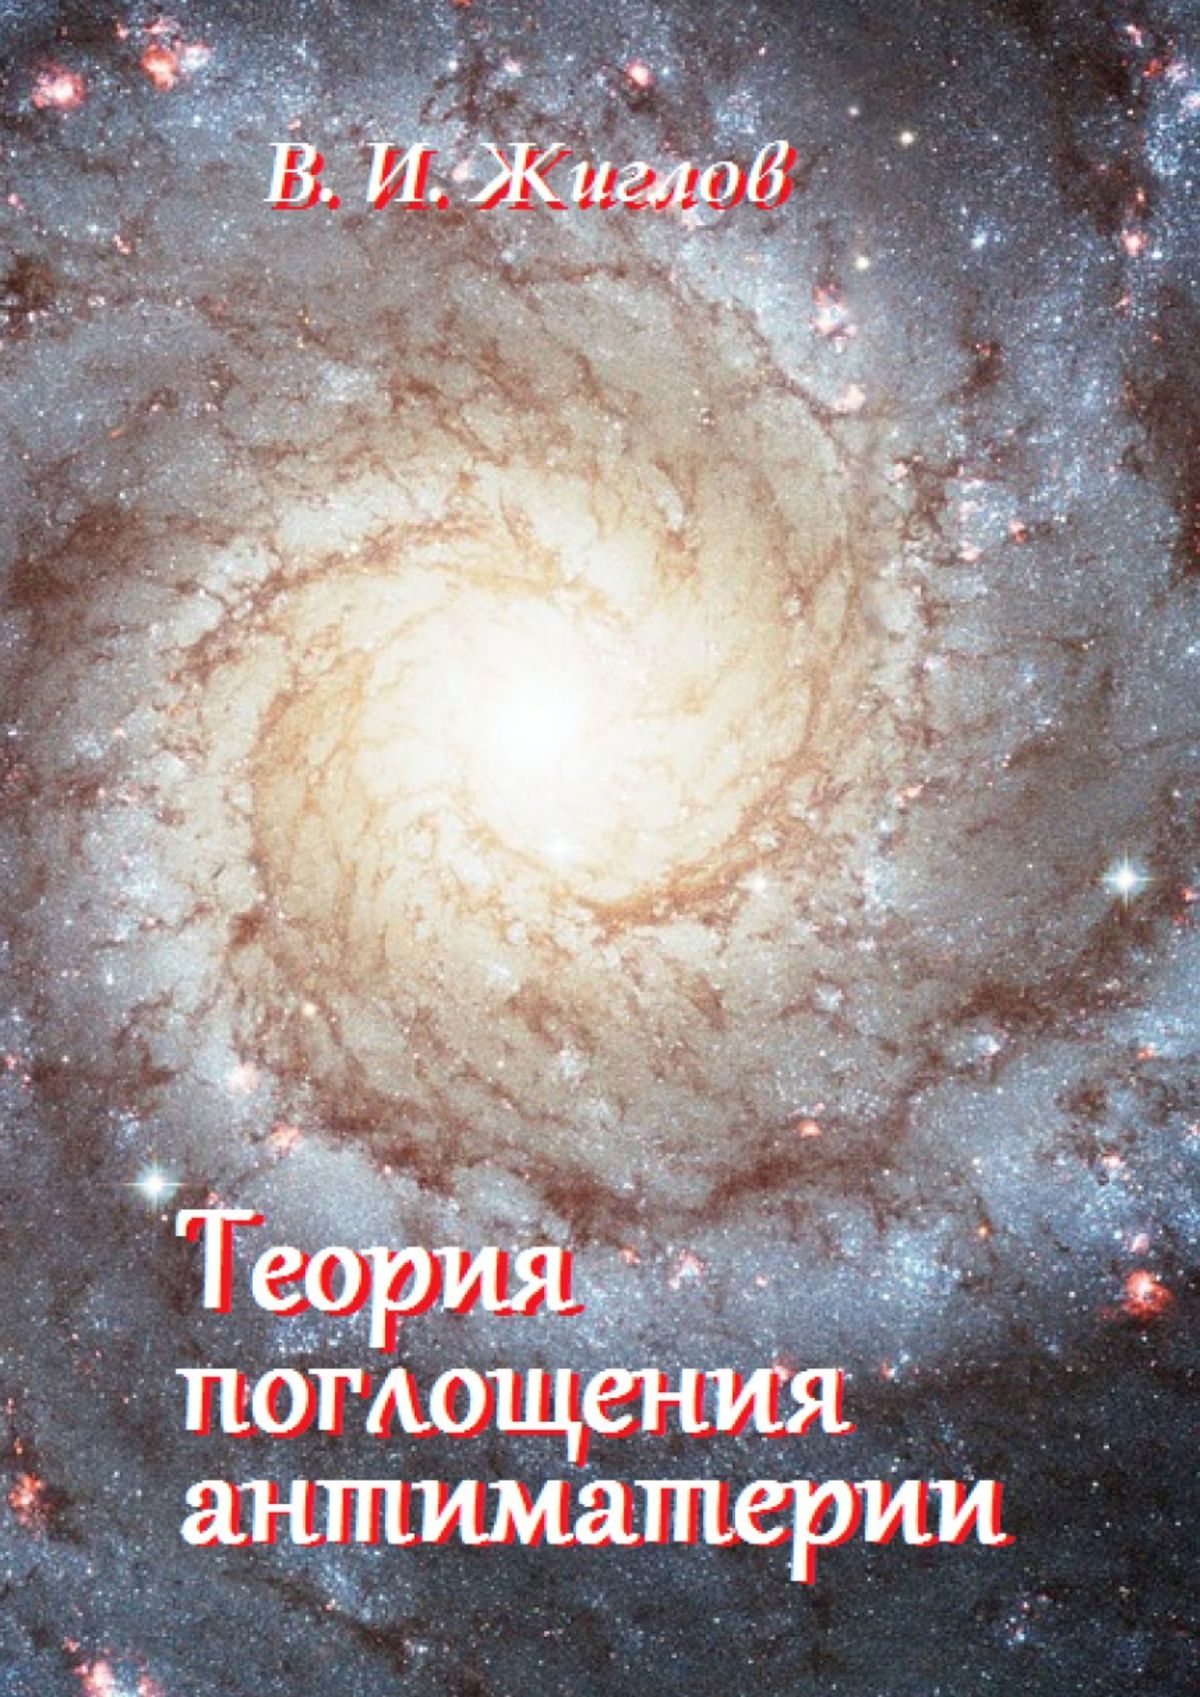 Книга Теория поглощения антиматерии из серии , созданная В. Жиглов, может относится к жанру Физика, Прочая образовательная литература. Стоимость книги Теория поглощения антиматерии  с идентификатором 25558163 составляет 156.00 руб.